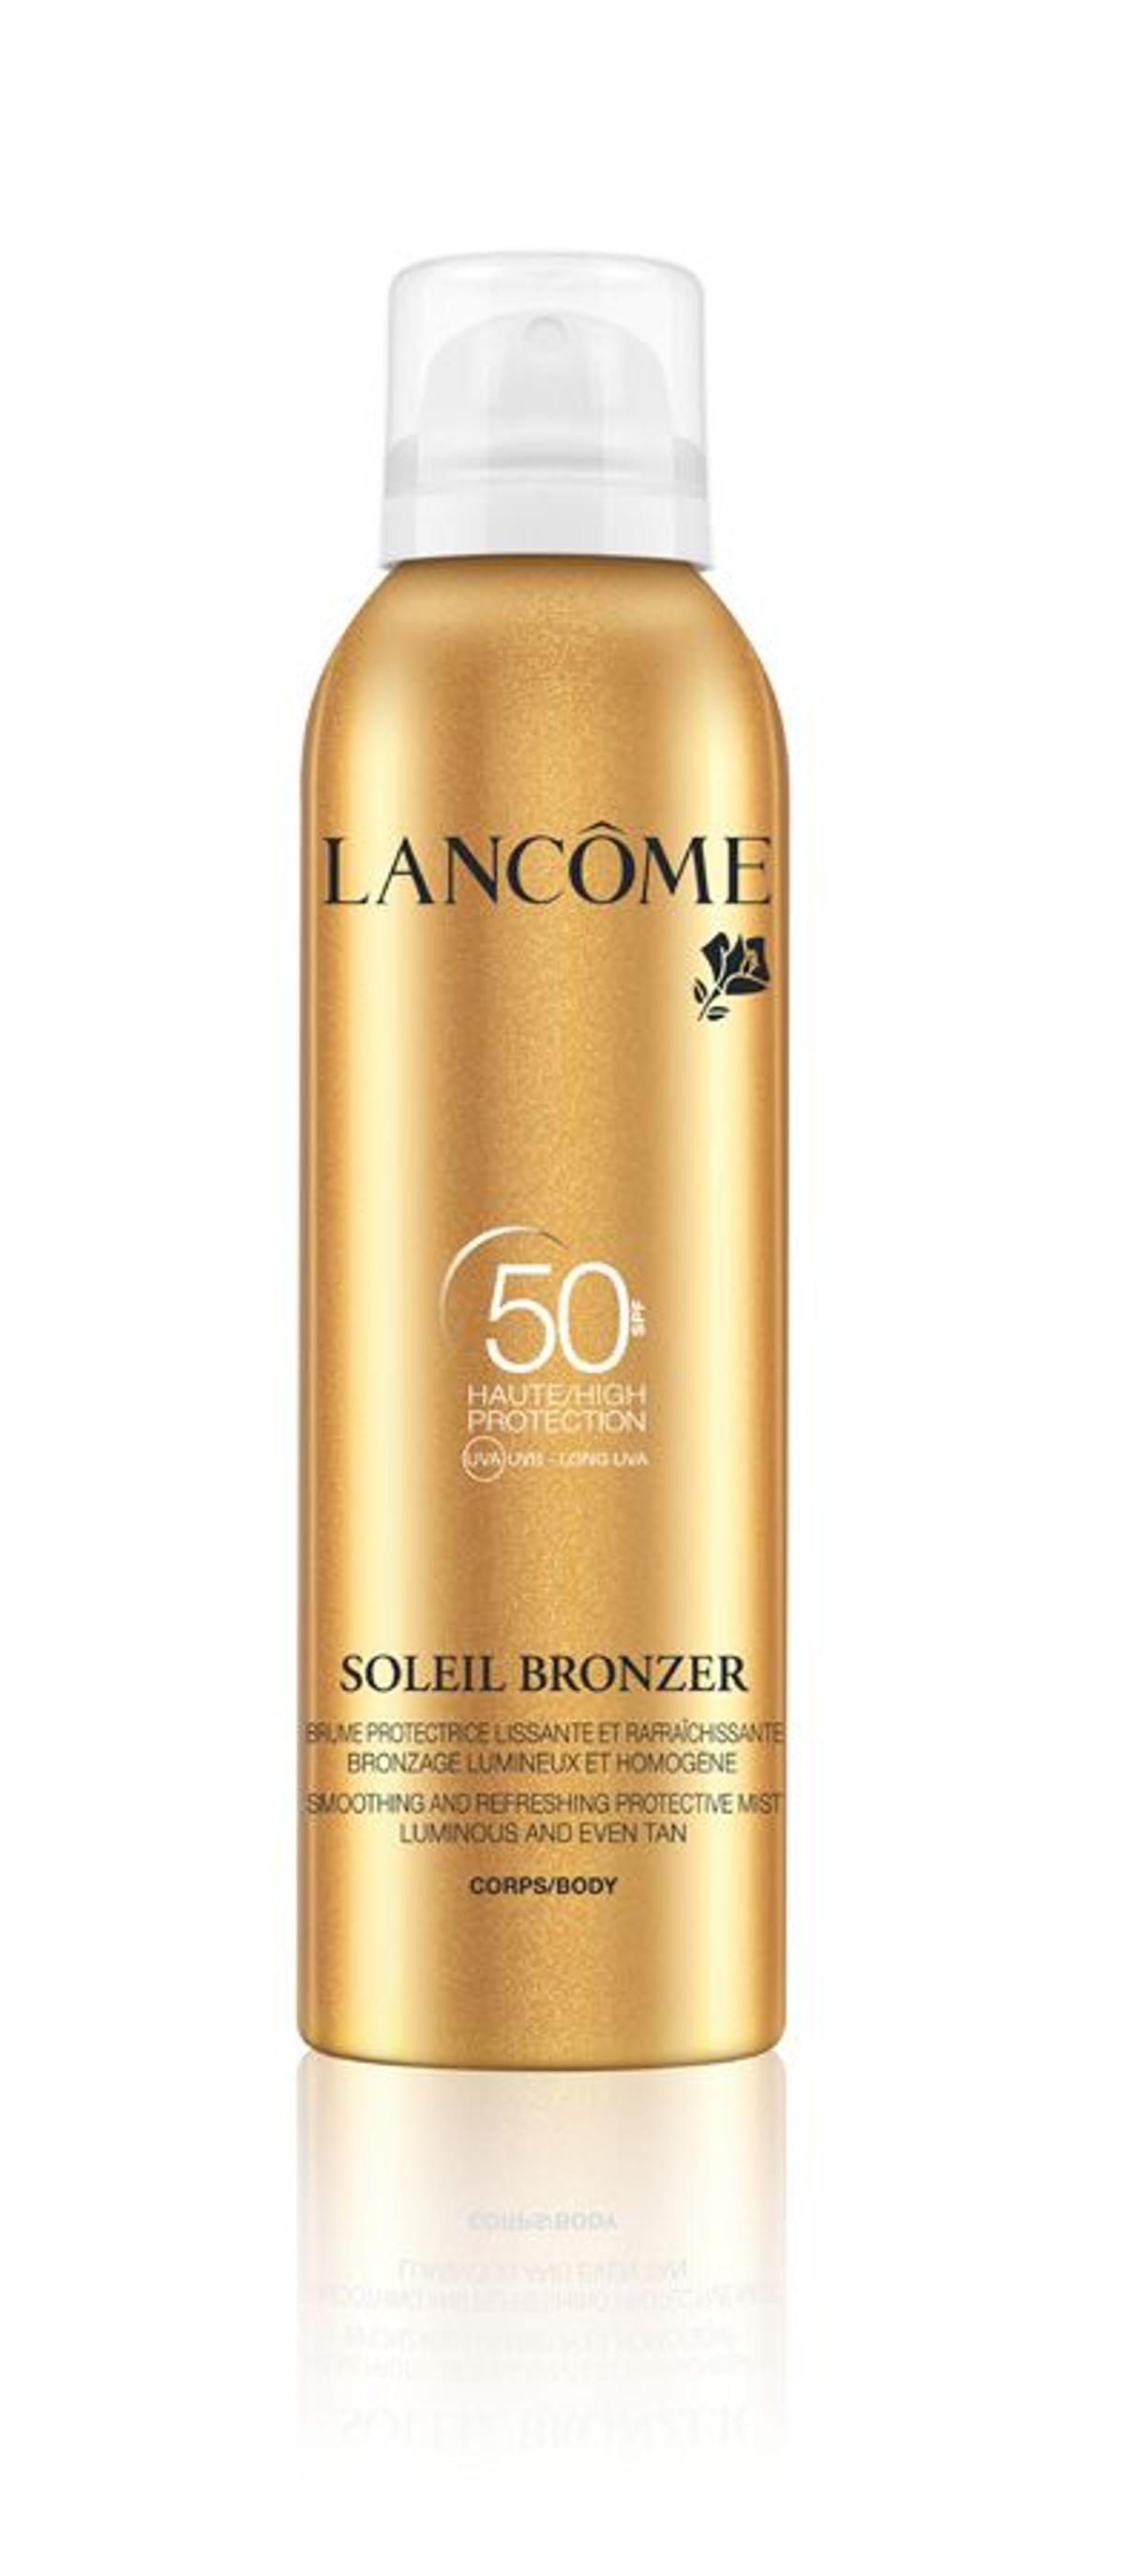 7. Soleil Bronzer para cuerpo SPF50, de Lancôme